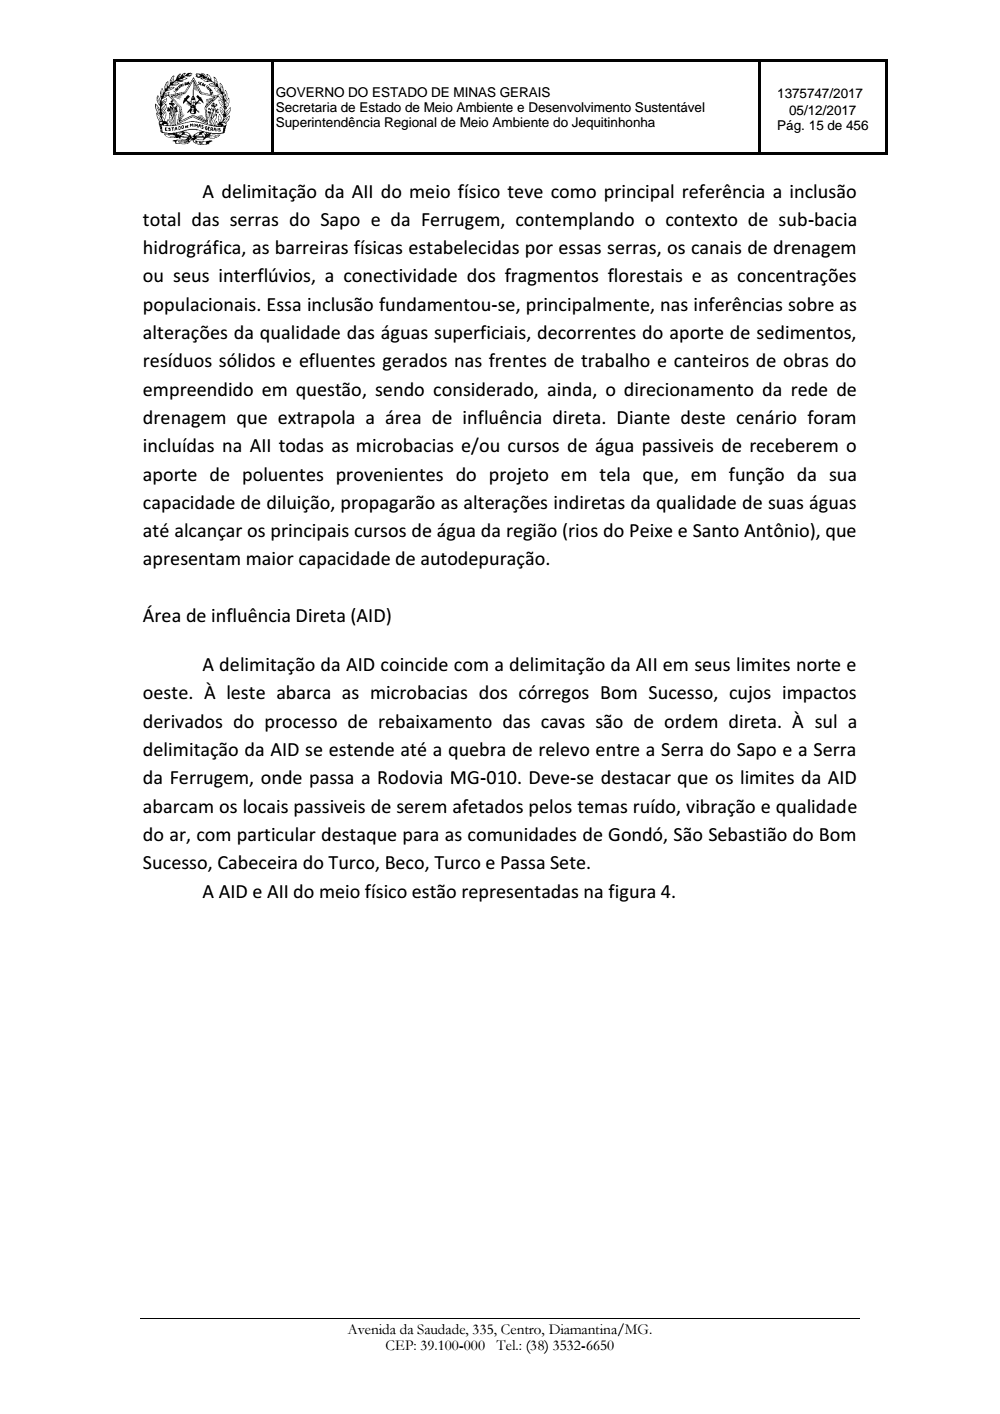 Page 15 from Parecer único da Secretaria de estado de Meio Ambiente e Desenvolvimento Sustentável (SEMAD)